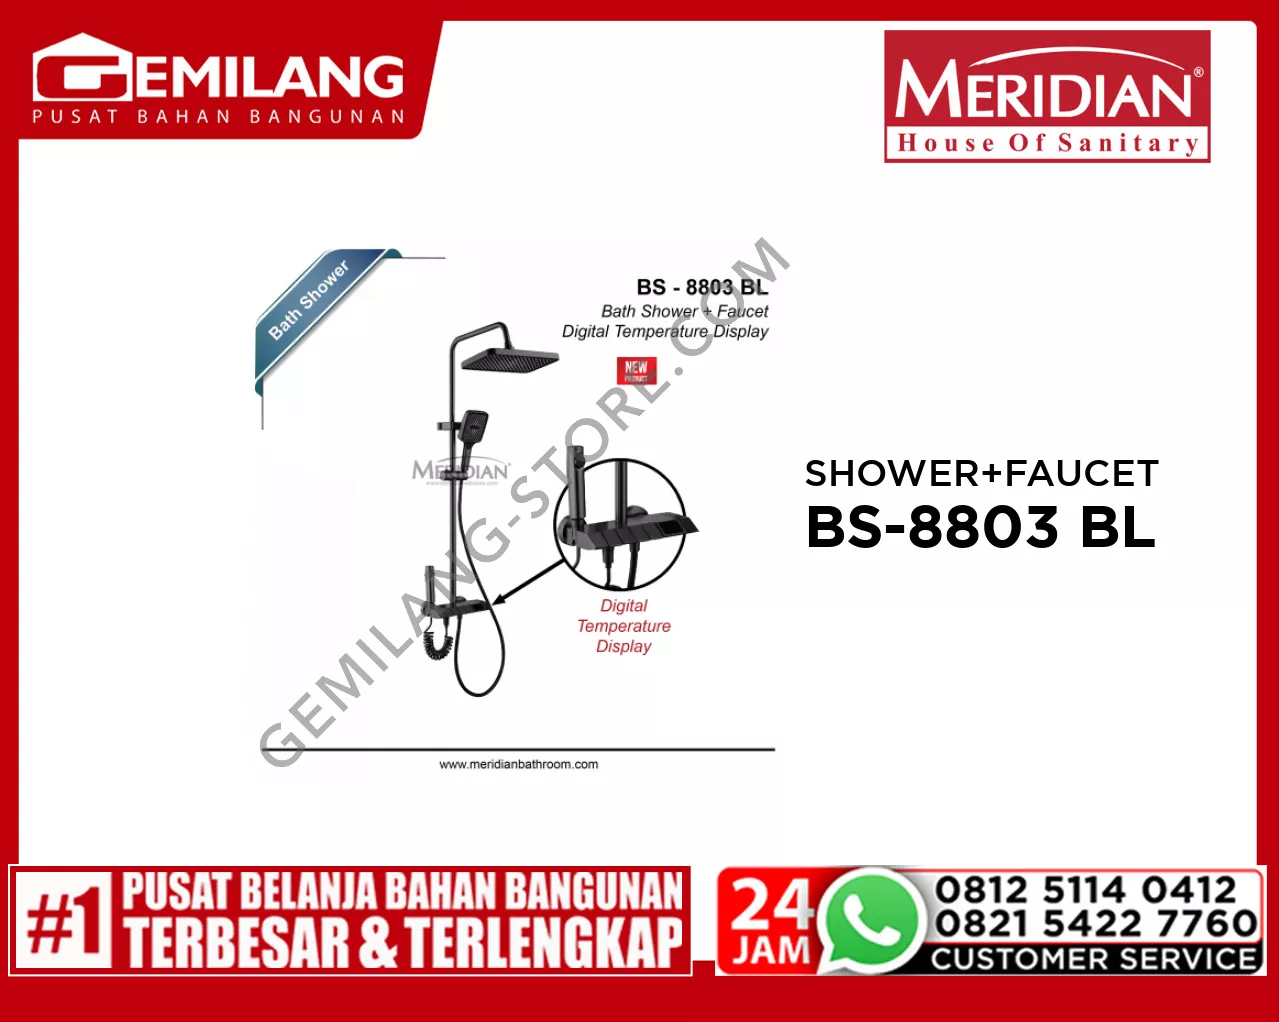 MERIDIAN BATH SHOWER + FAUCET BLACK BS-8803 BL